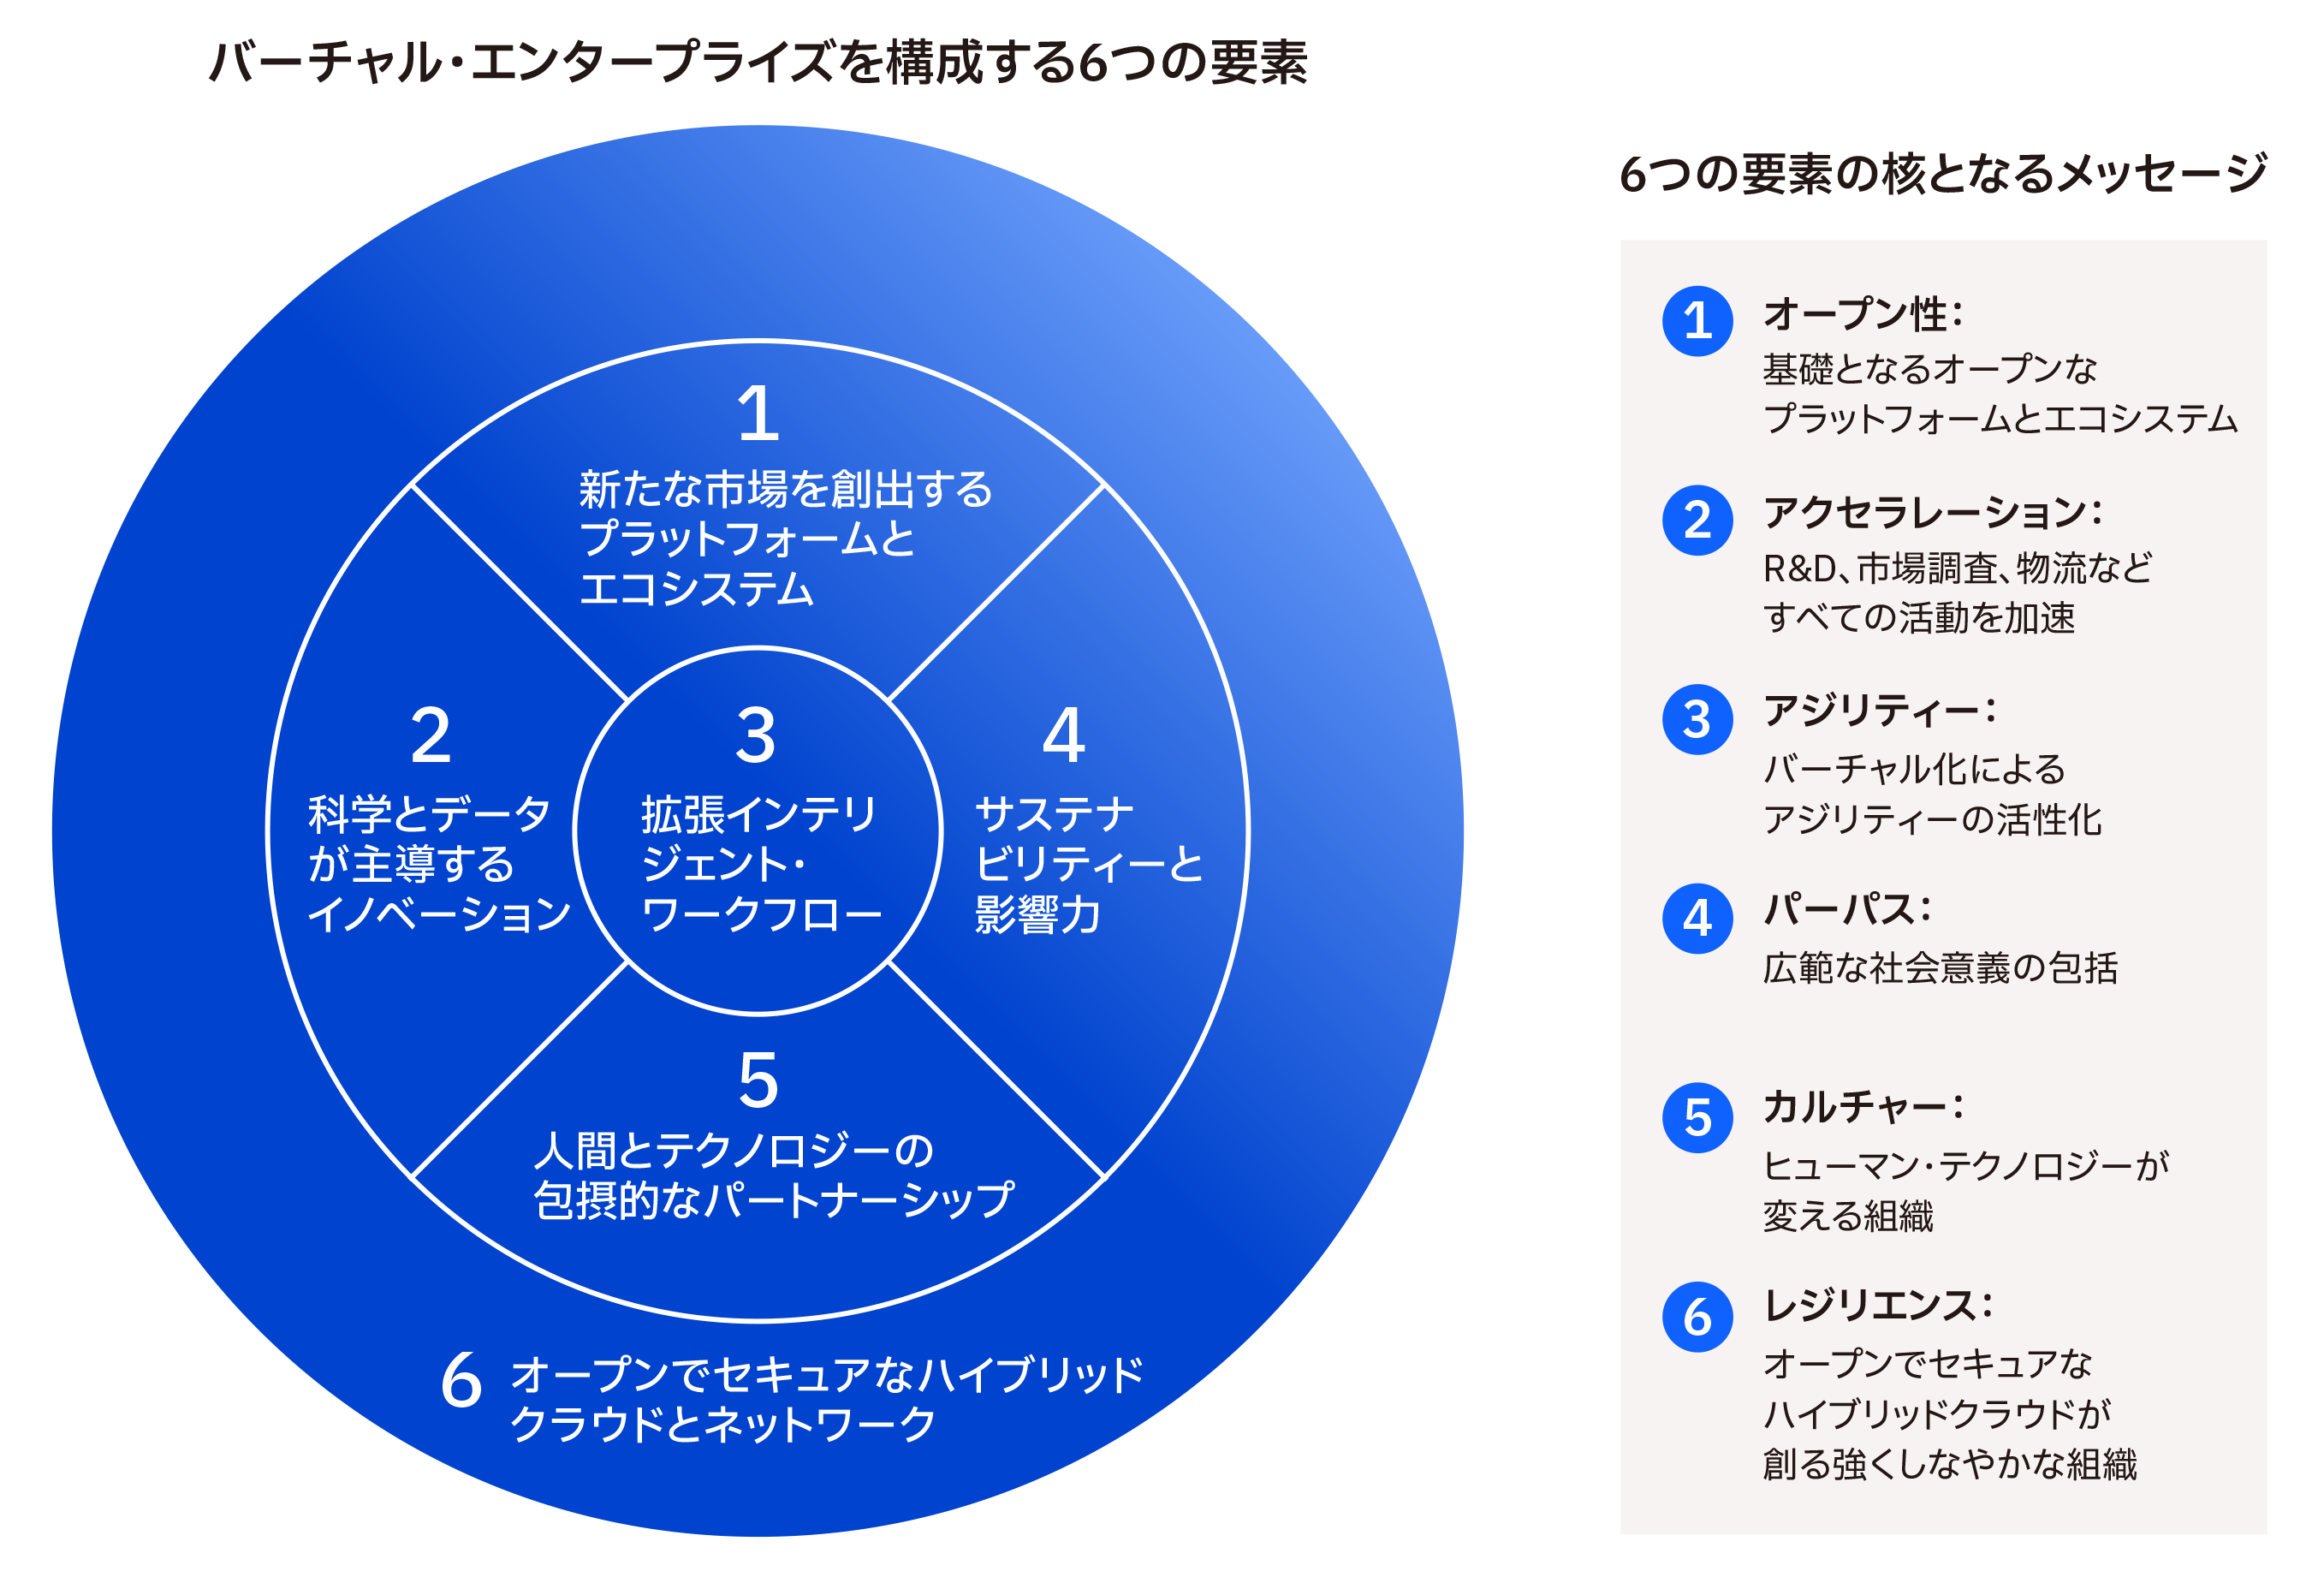 インフォグラフィック「バーチャル・エンタープライズを構成する６つの要素と、６つの要素の核となるメッセージ」